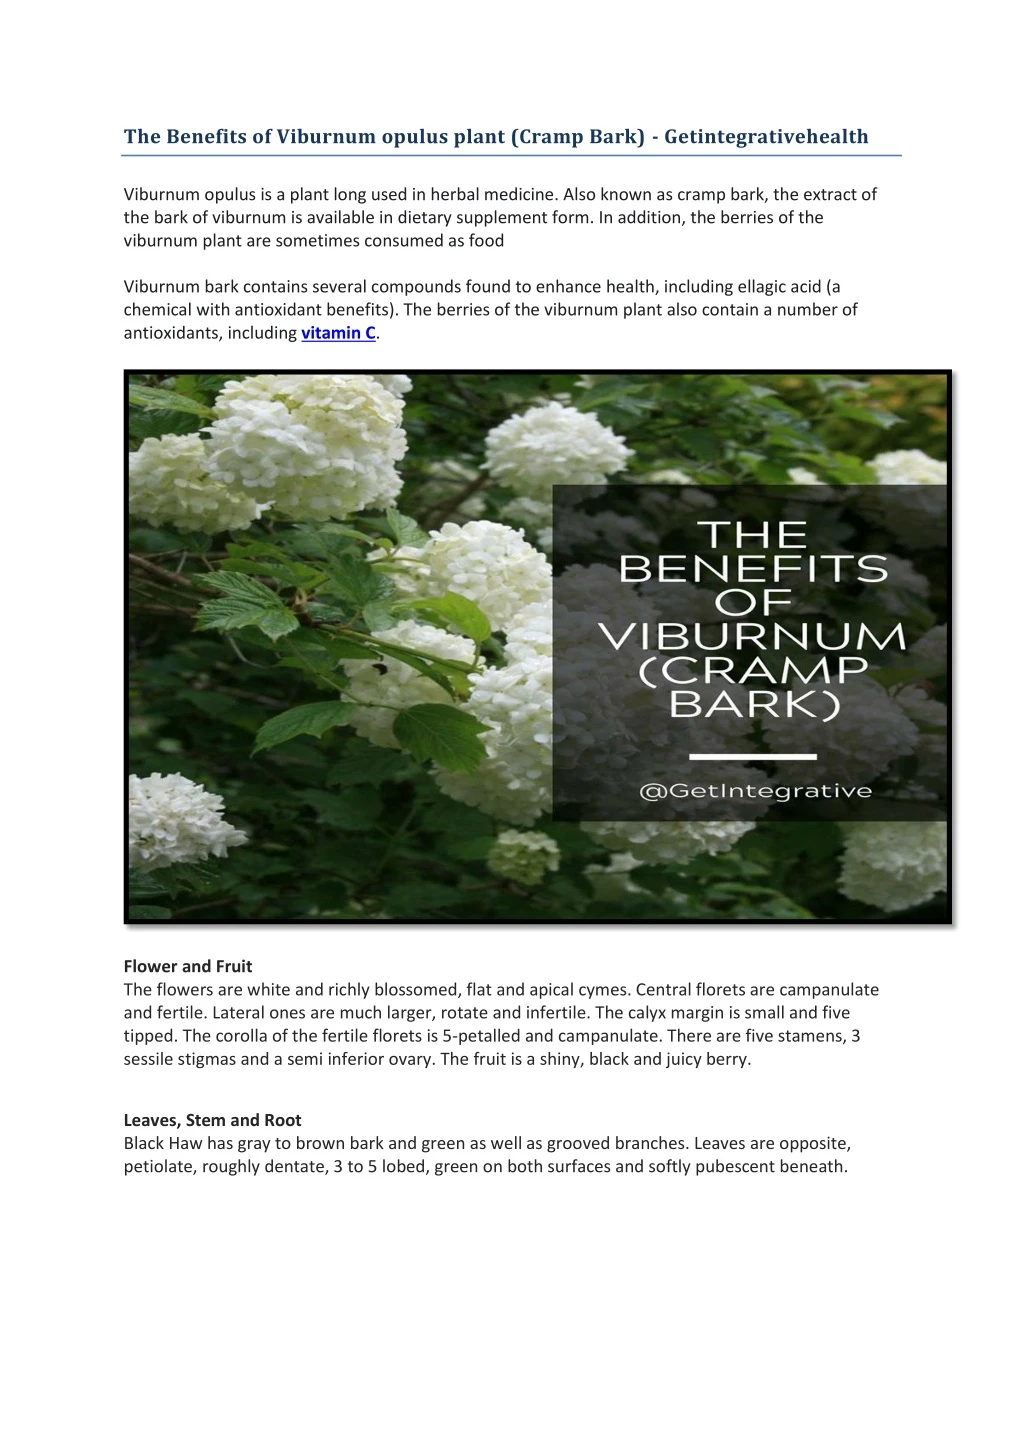 the benefits of viburnum opulus plant cramp bark